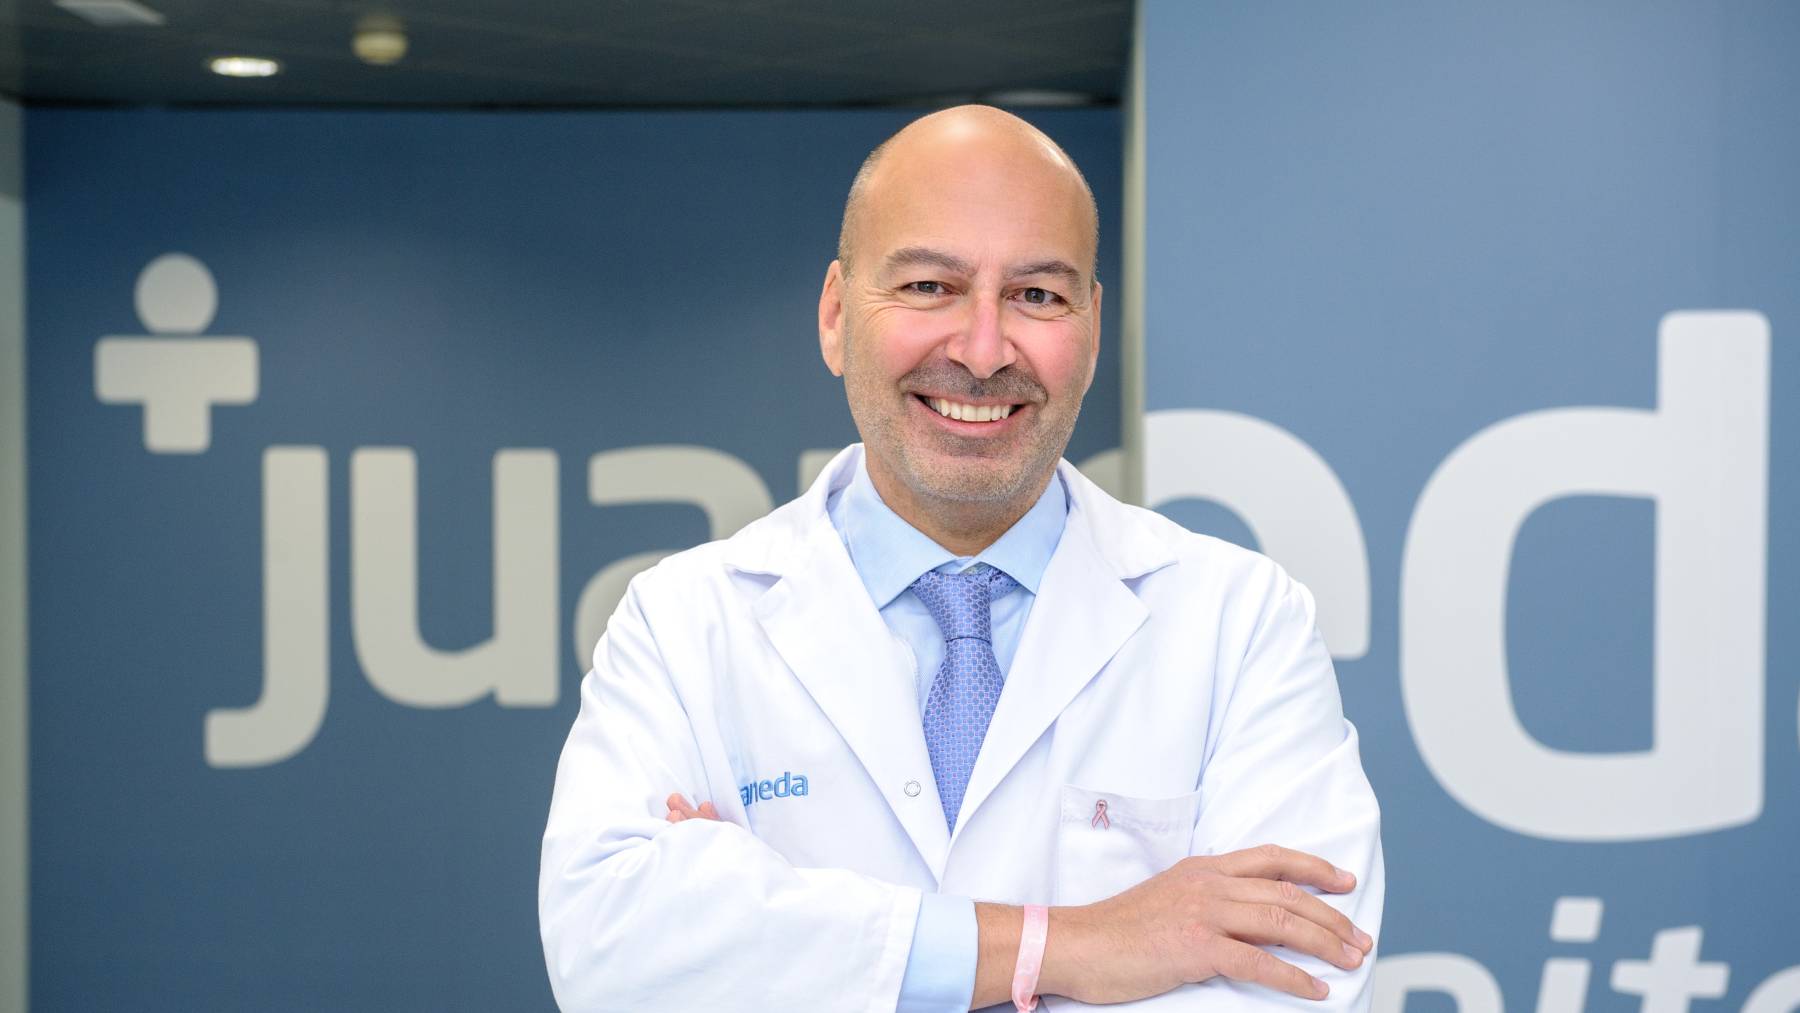 El doctor Francisco Moragues, ginecólogo de Juaneda Hospitales con consulta en Clínica Juaneda.